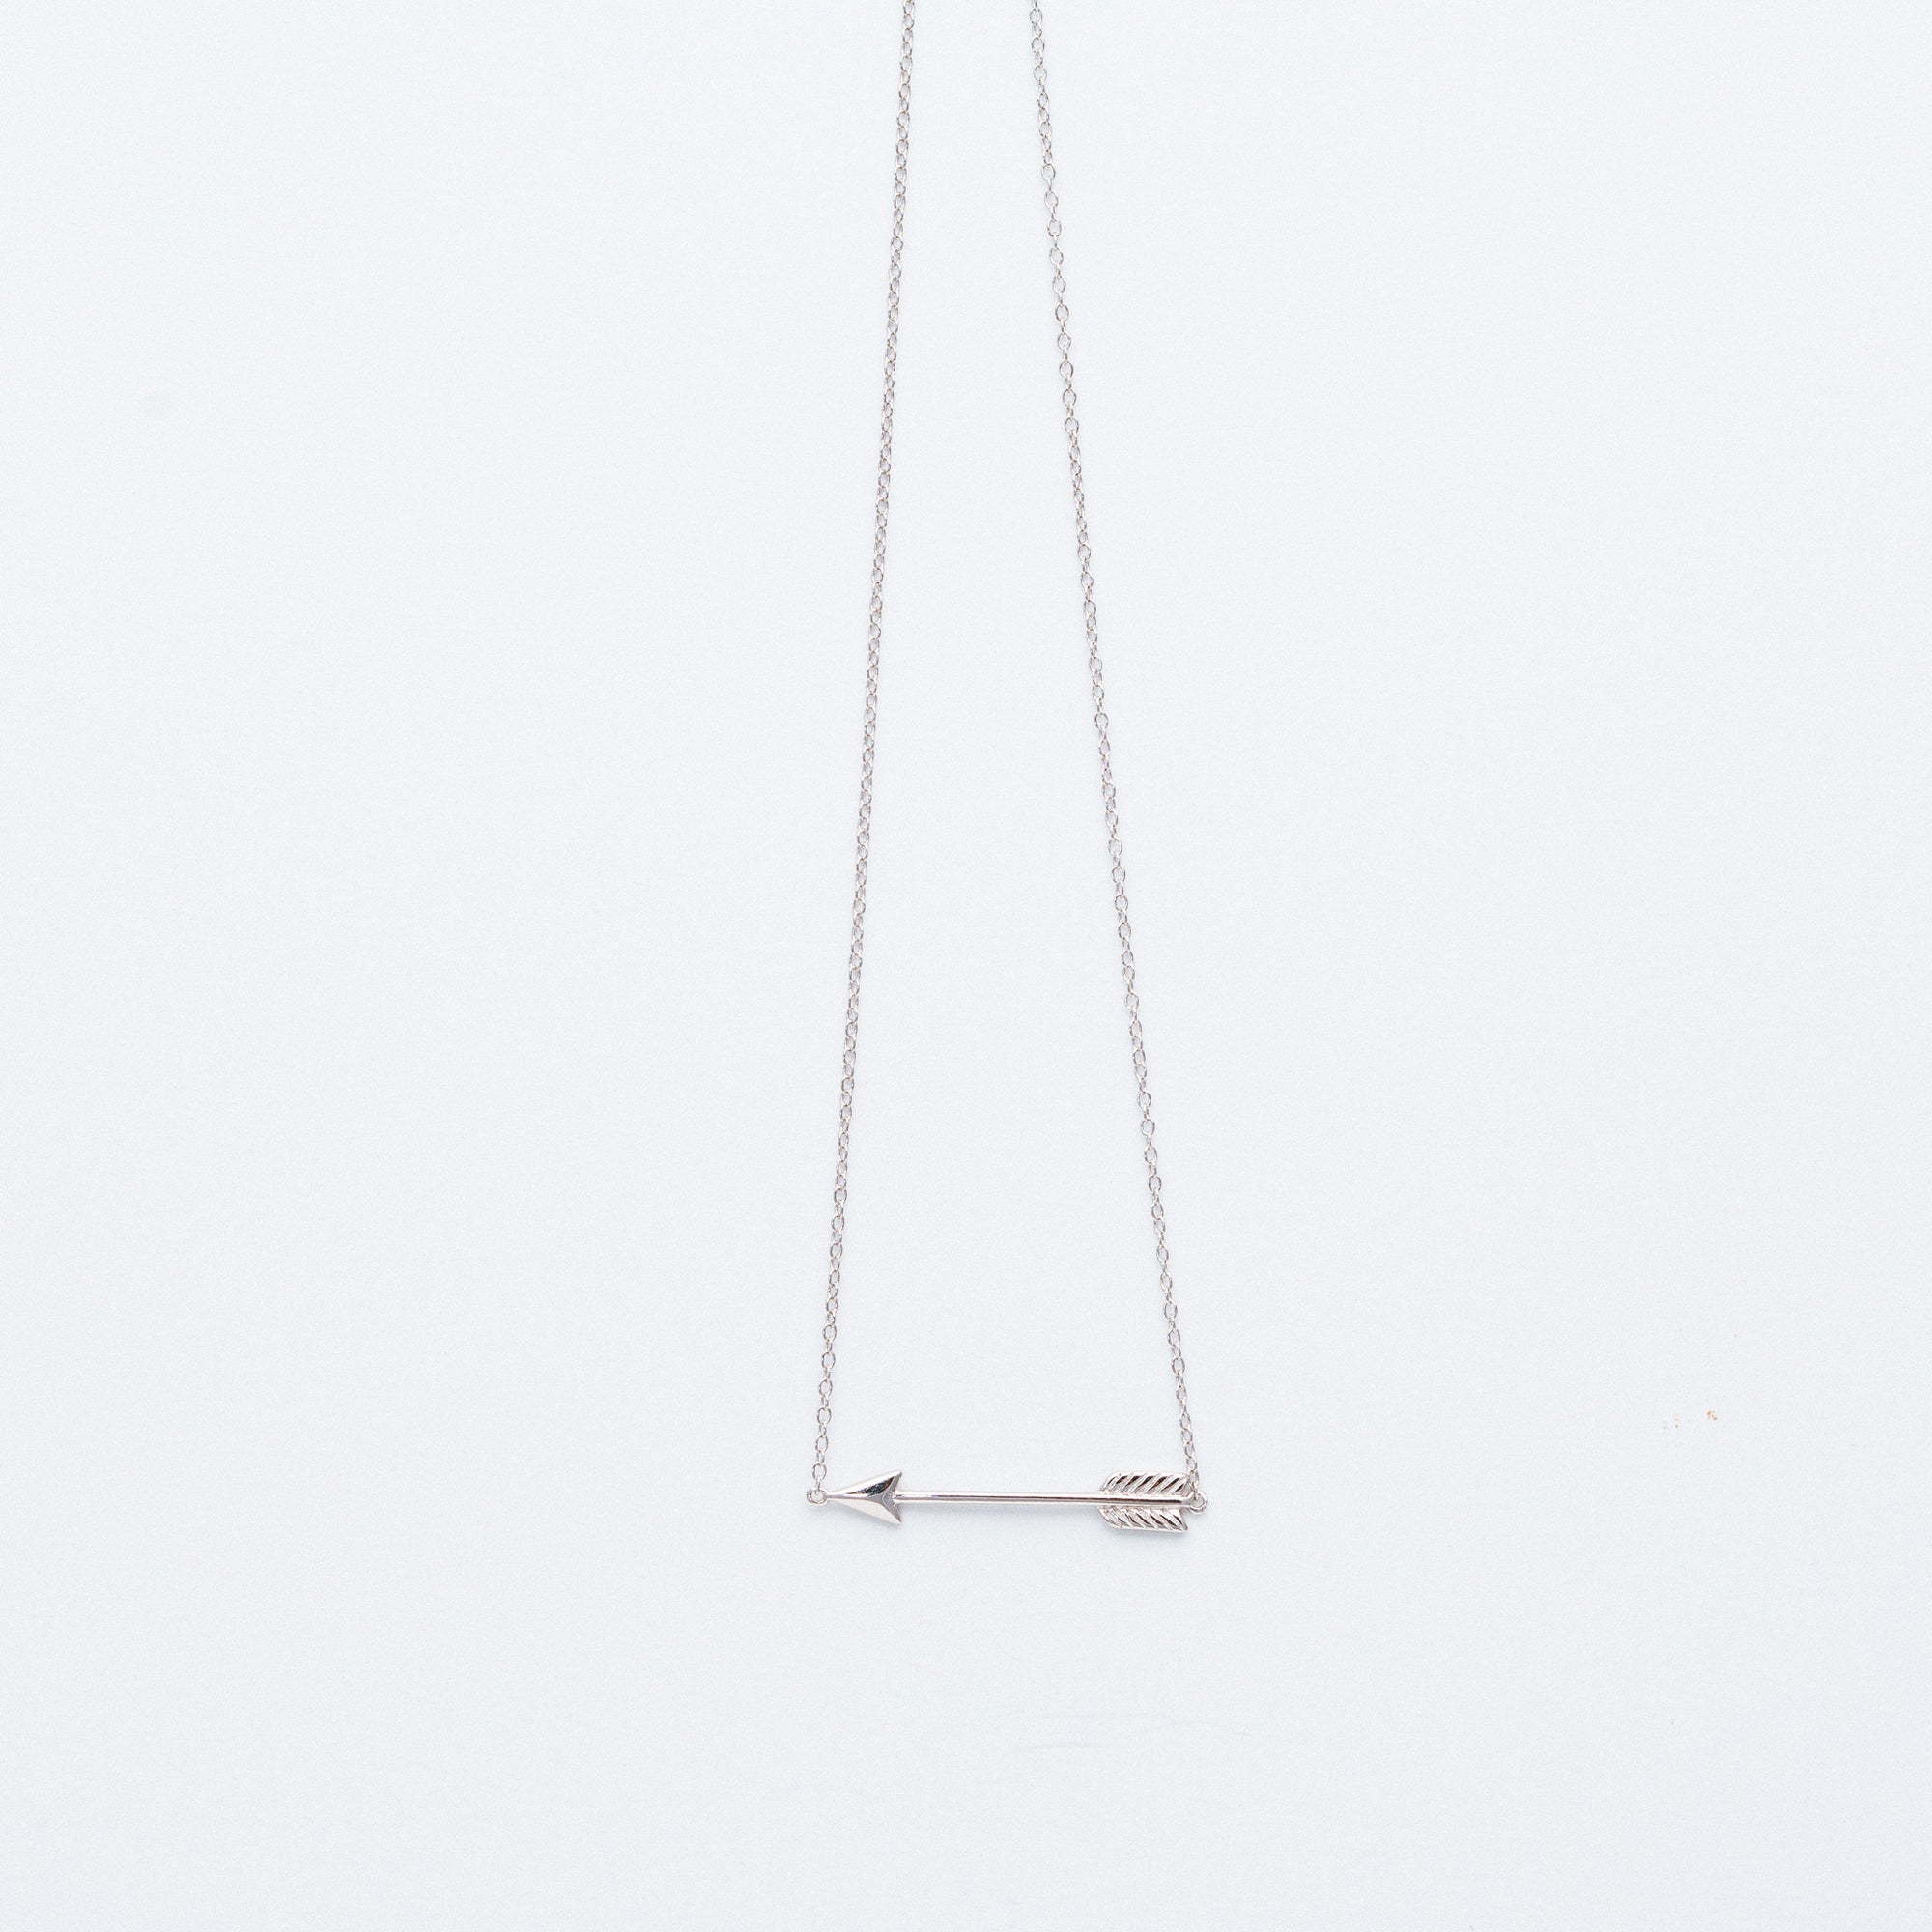 NSC - Plain Arrow Necklace